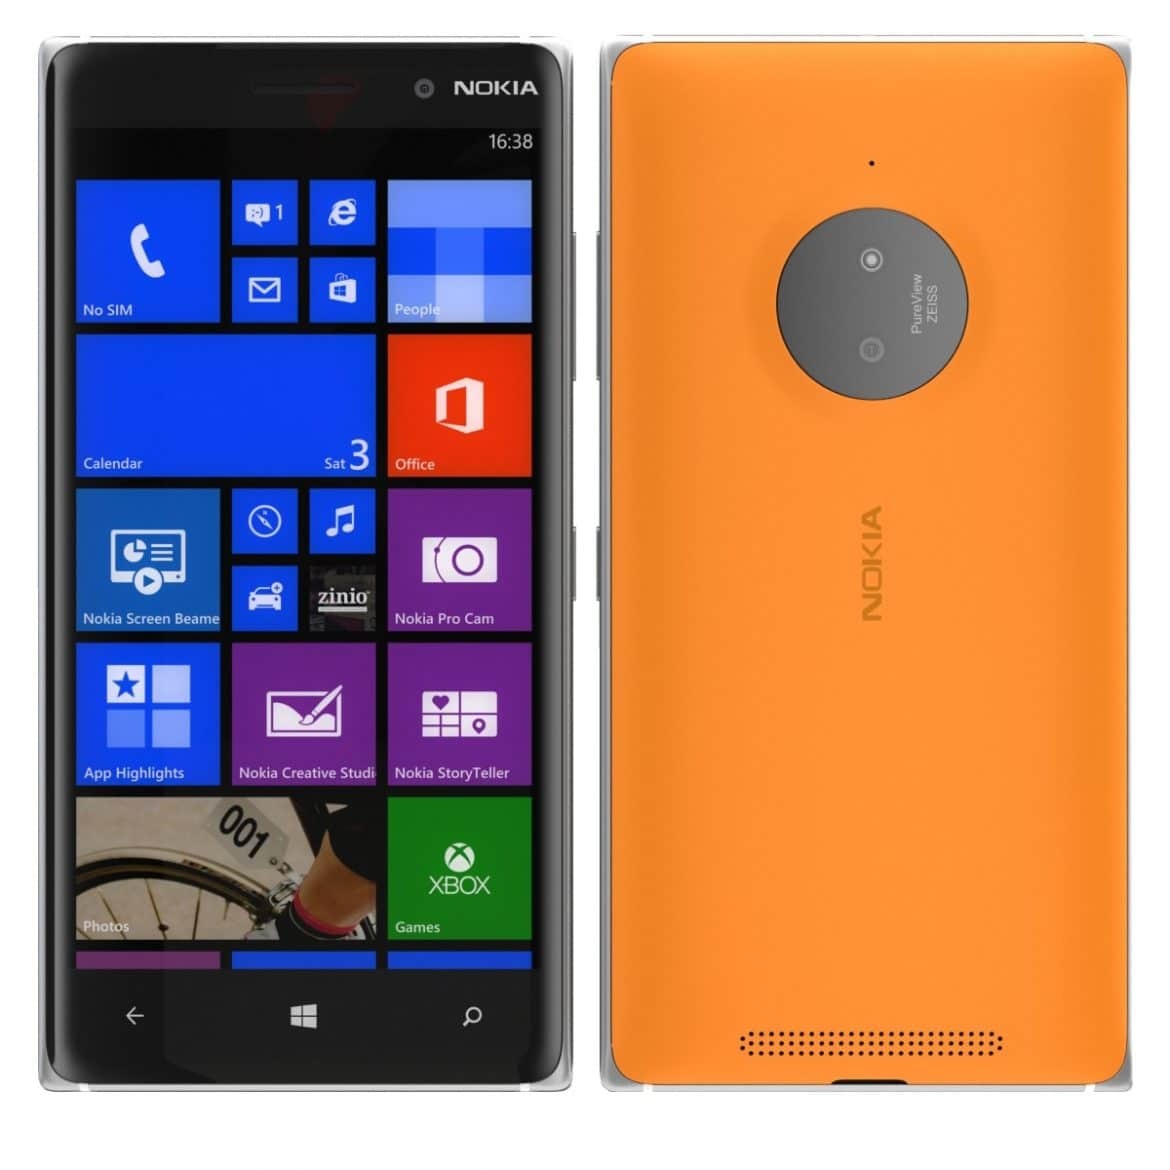 Nokia 830 Lumia